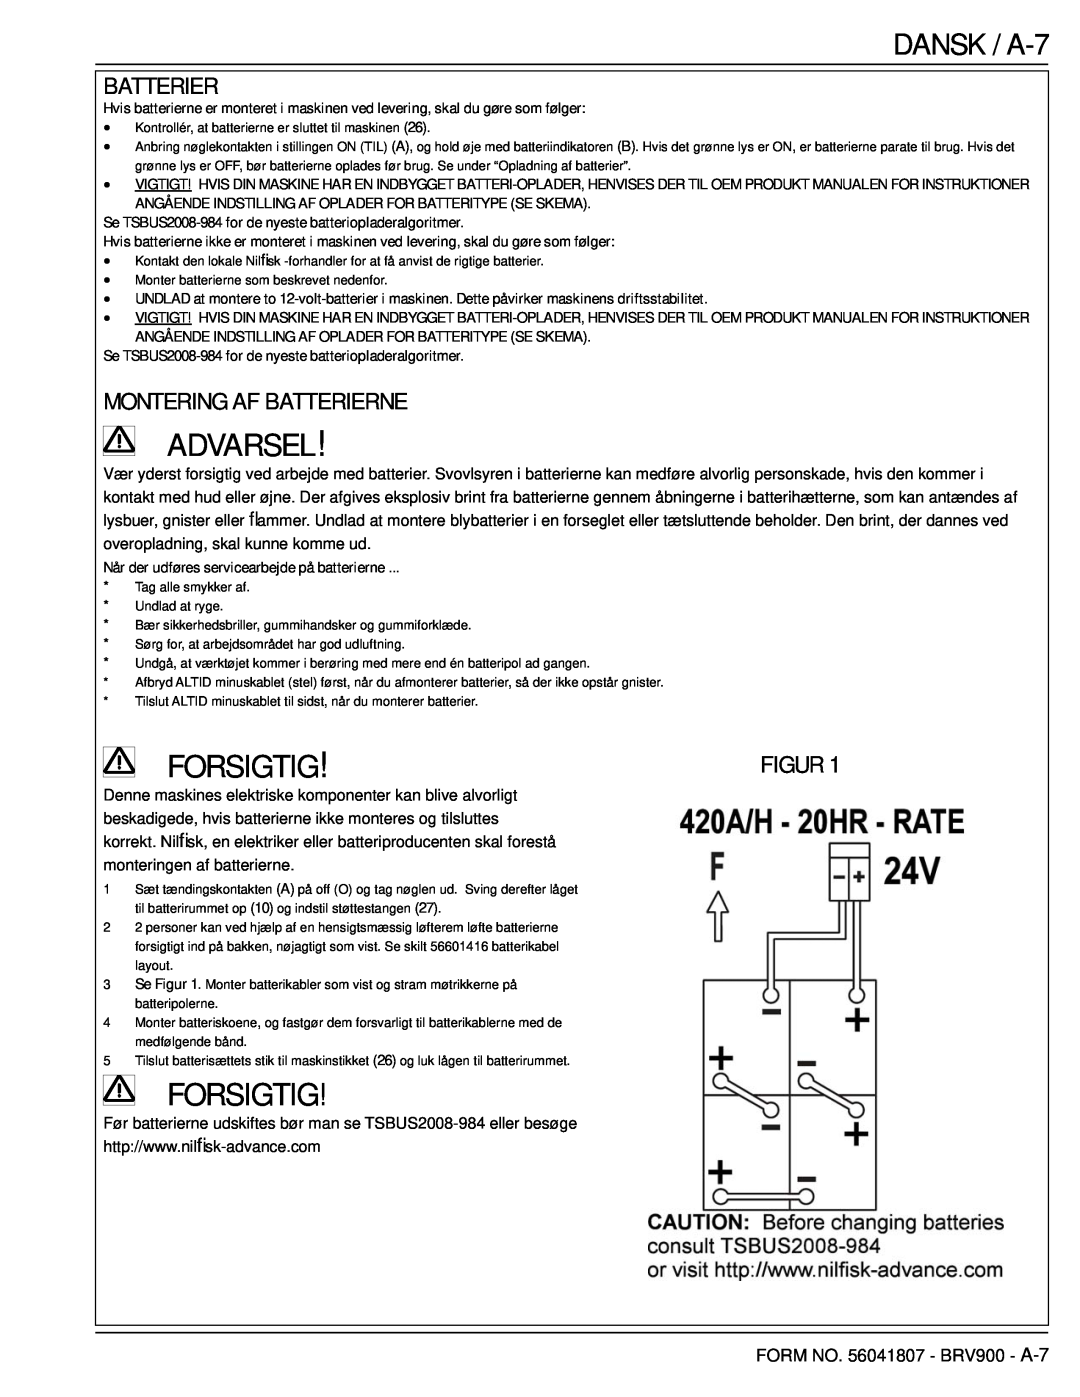 Nilfisk-Advance America 56602002 manual DANSK / A-7, Montering Af Batterierne, Figur, Advarsel, Forsigtig 